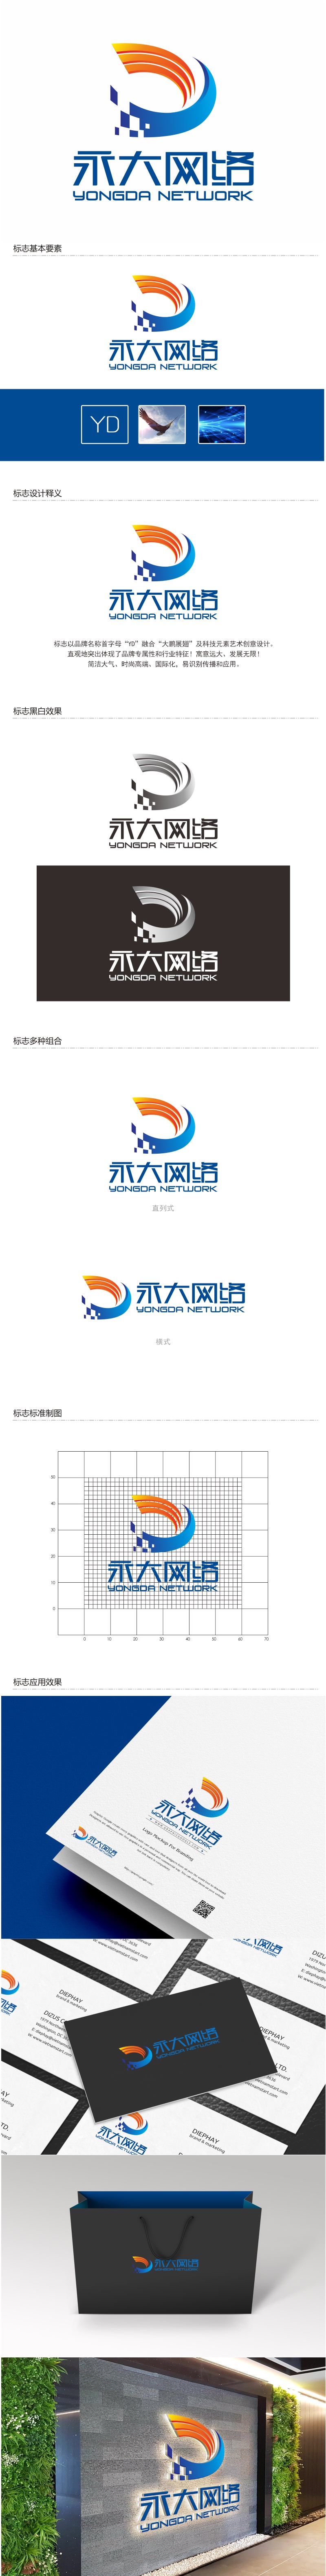 陈国伟的永大网络logo设计